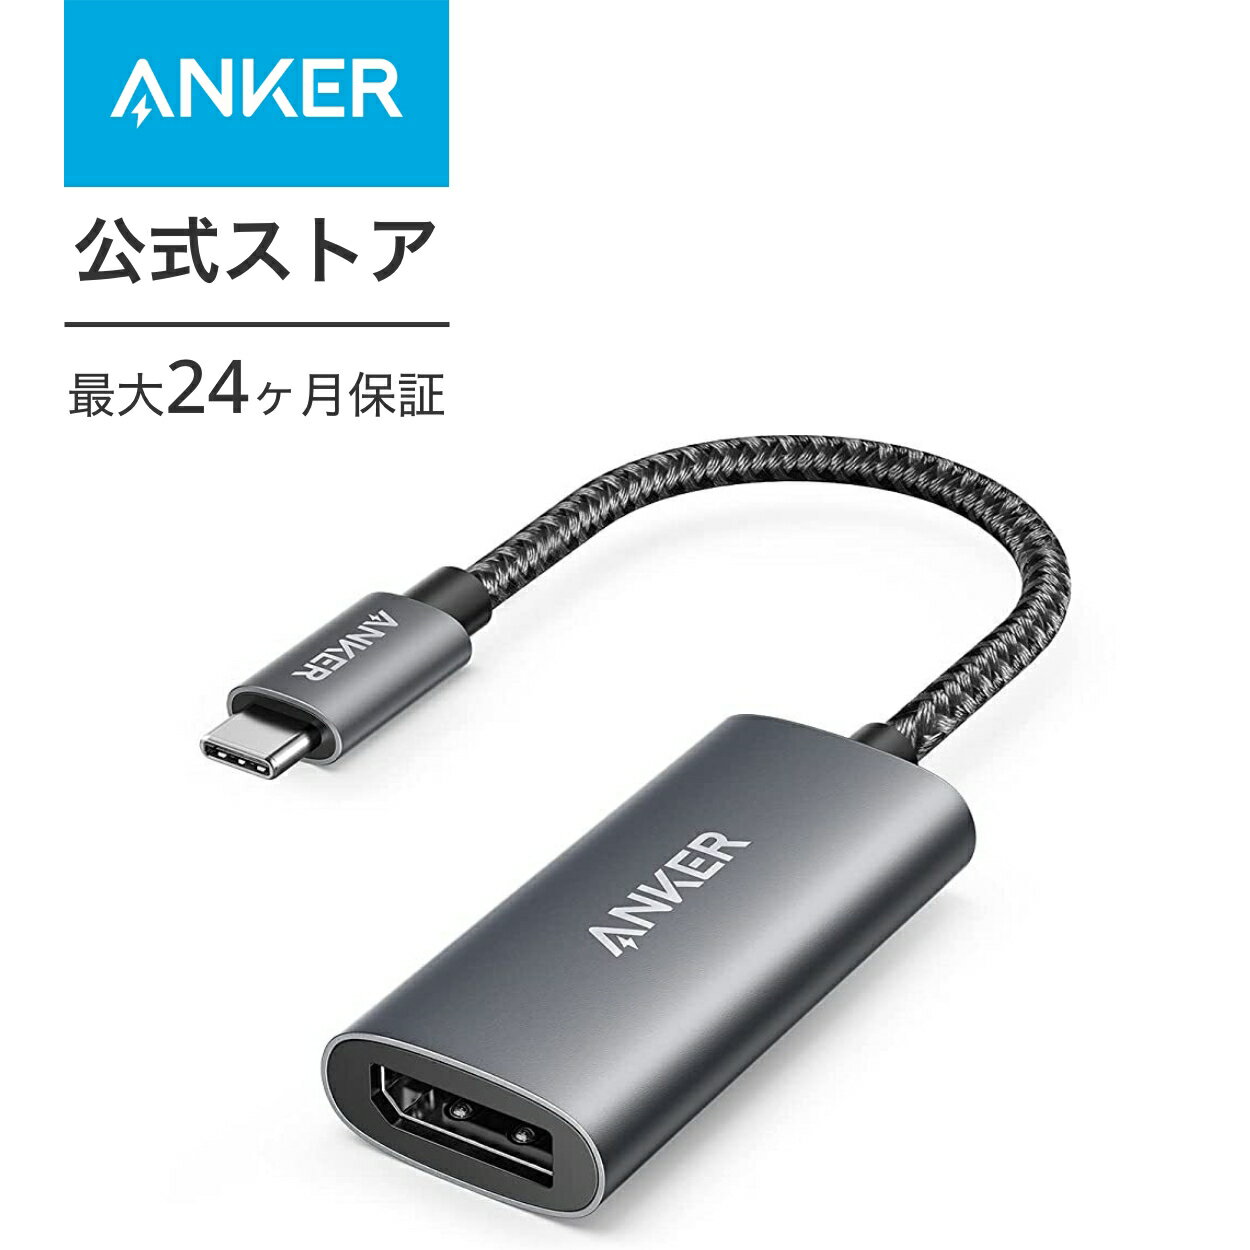 【1,000円OFF 6/11まで】Anker 518 USB-C Adapter (8K DisplayPort) 変換アダプタ 8K (60Hz) / 4K (144Hz) 対応 Macbook Pro / MacBook Air / iPad Pro / Pixel / XPS 他対応